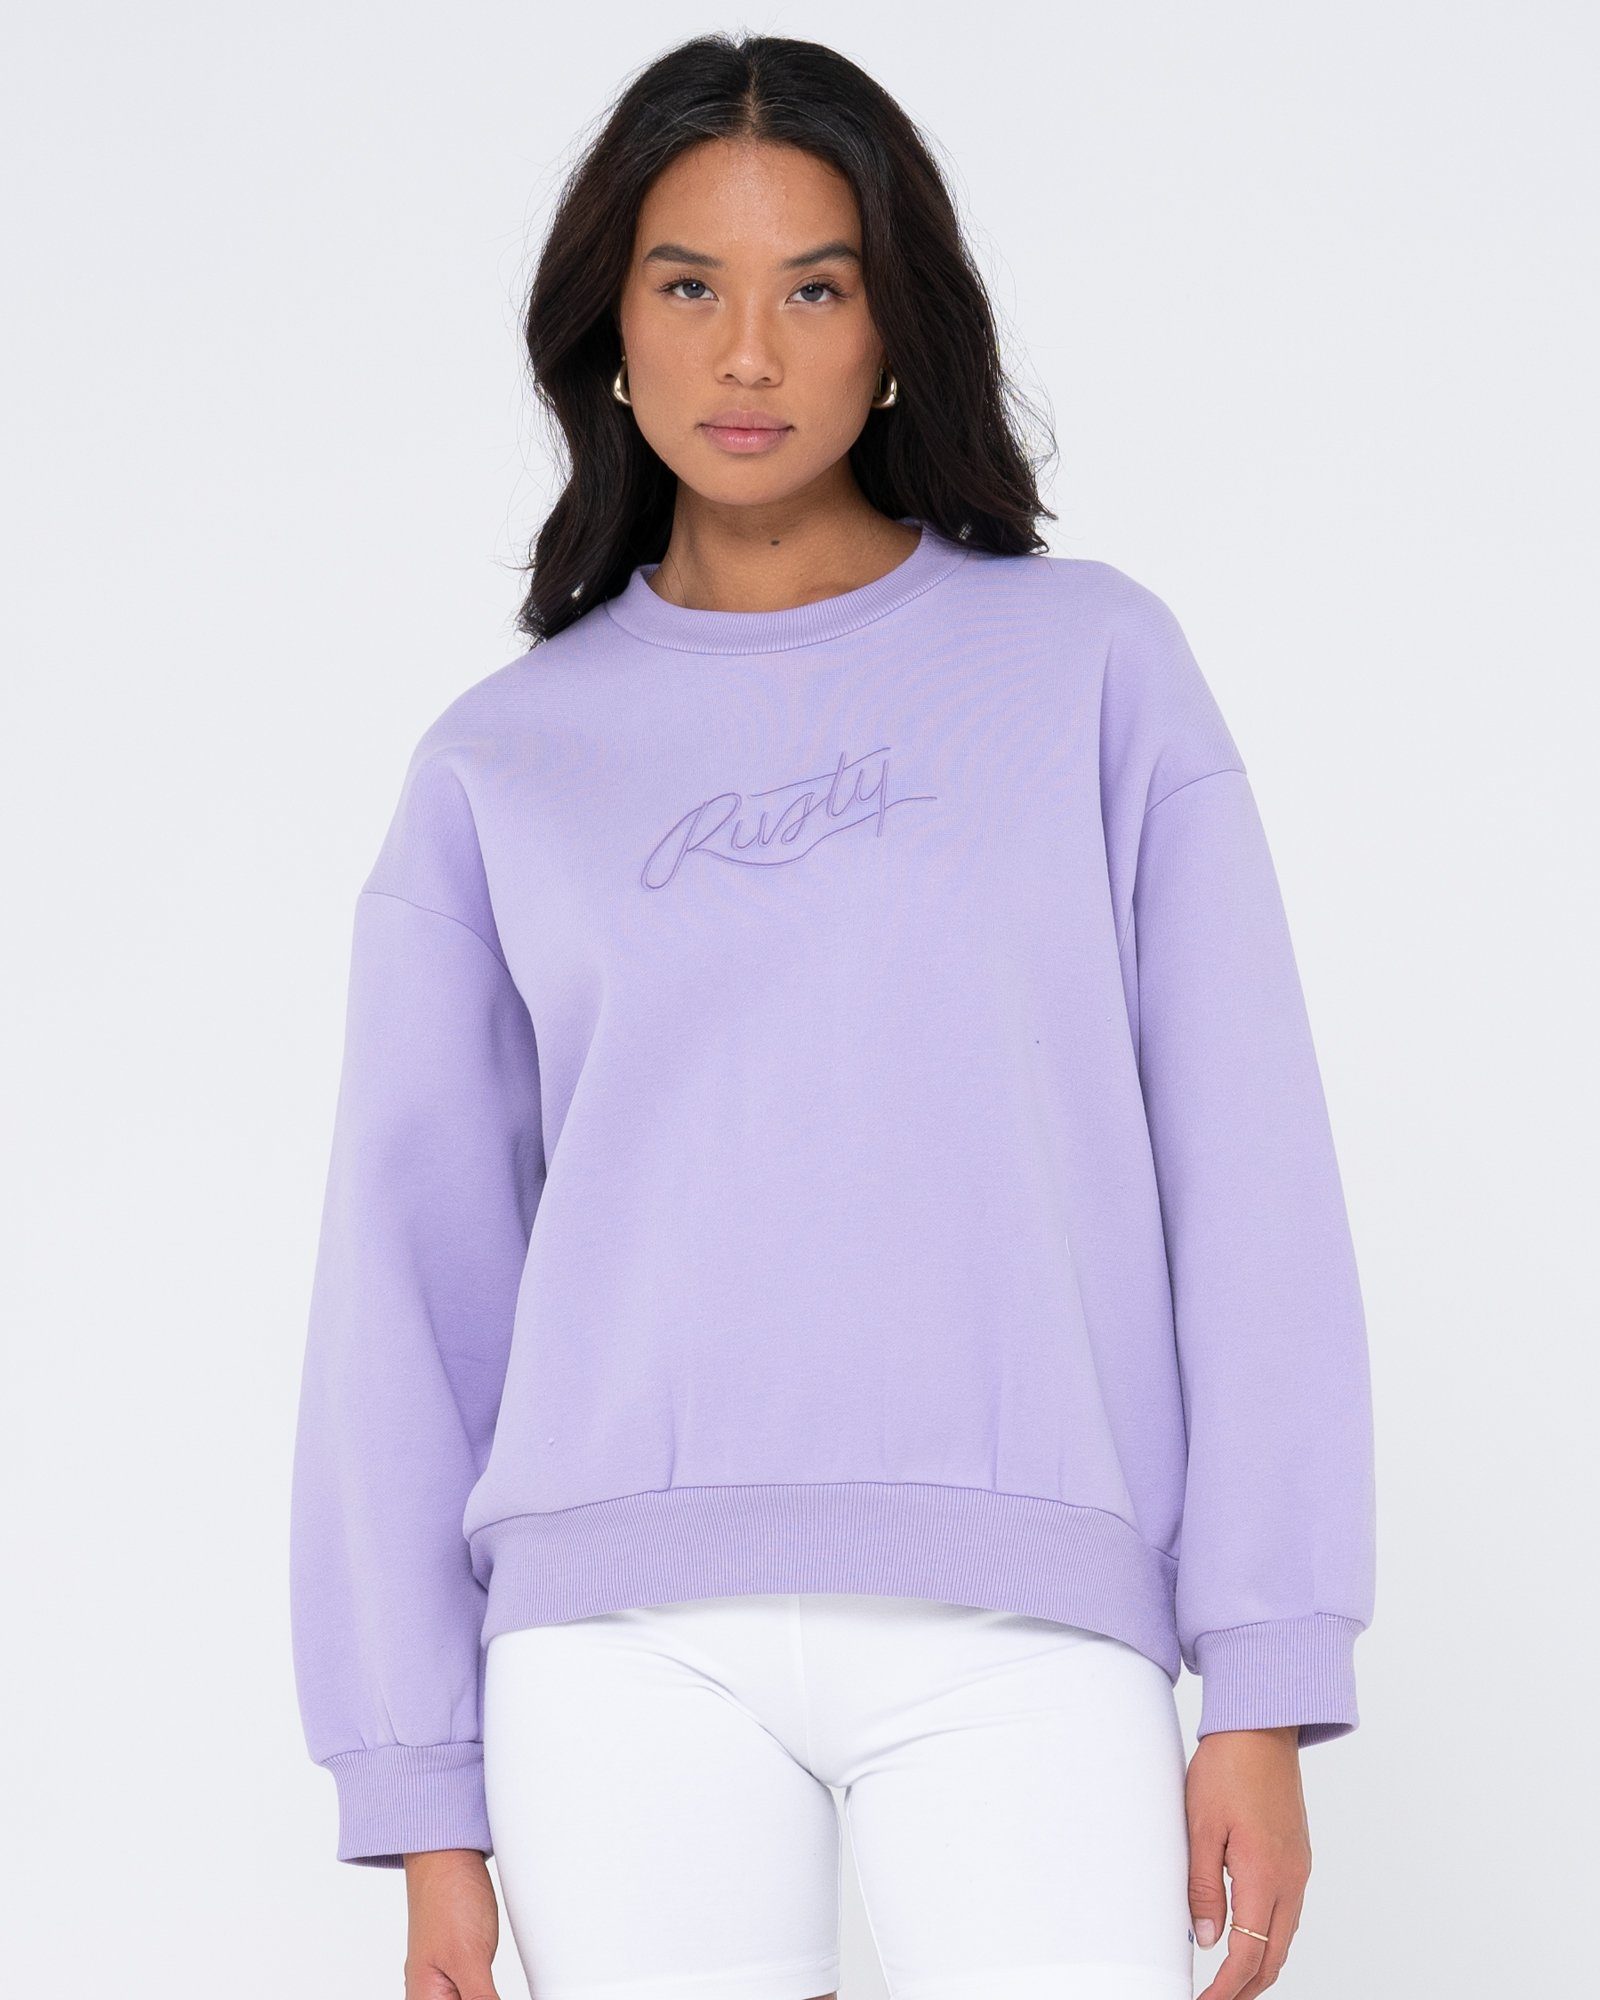 Rusty Sweatshirt RUSTY SCRIPT OVERSIZE CREW NECK FLEECE Lavender